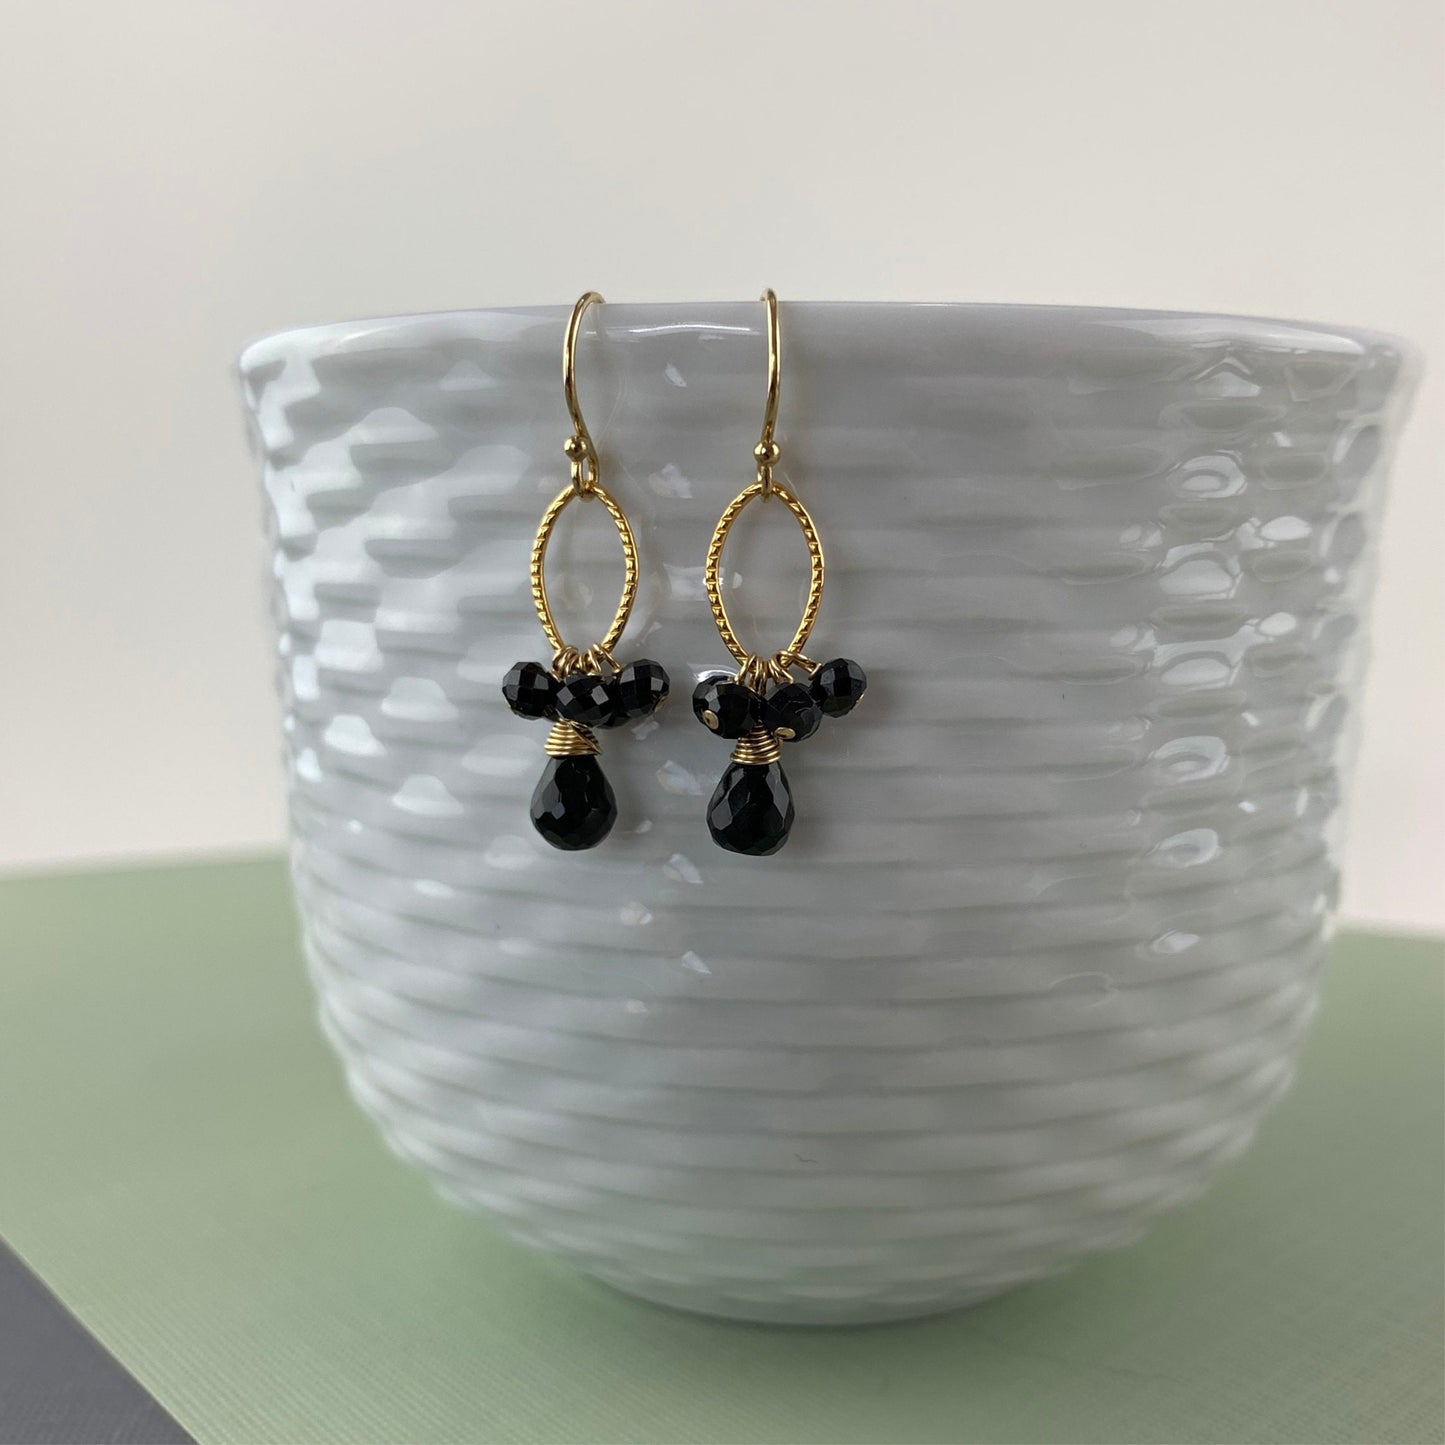 Gemstone Earrings Black Earrings Black and Gold Dainty Earrings Cute Earrings Black Jewelry Link Earrings Earrings for Women Gift for Her